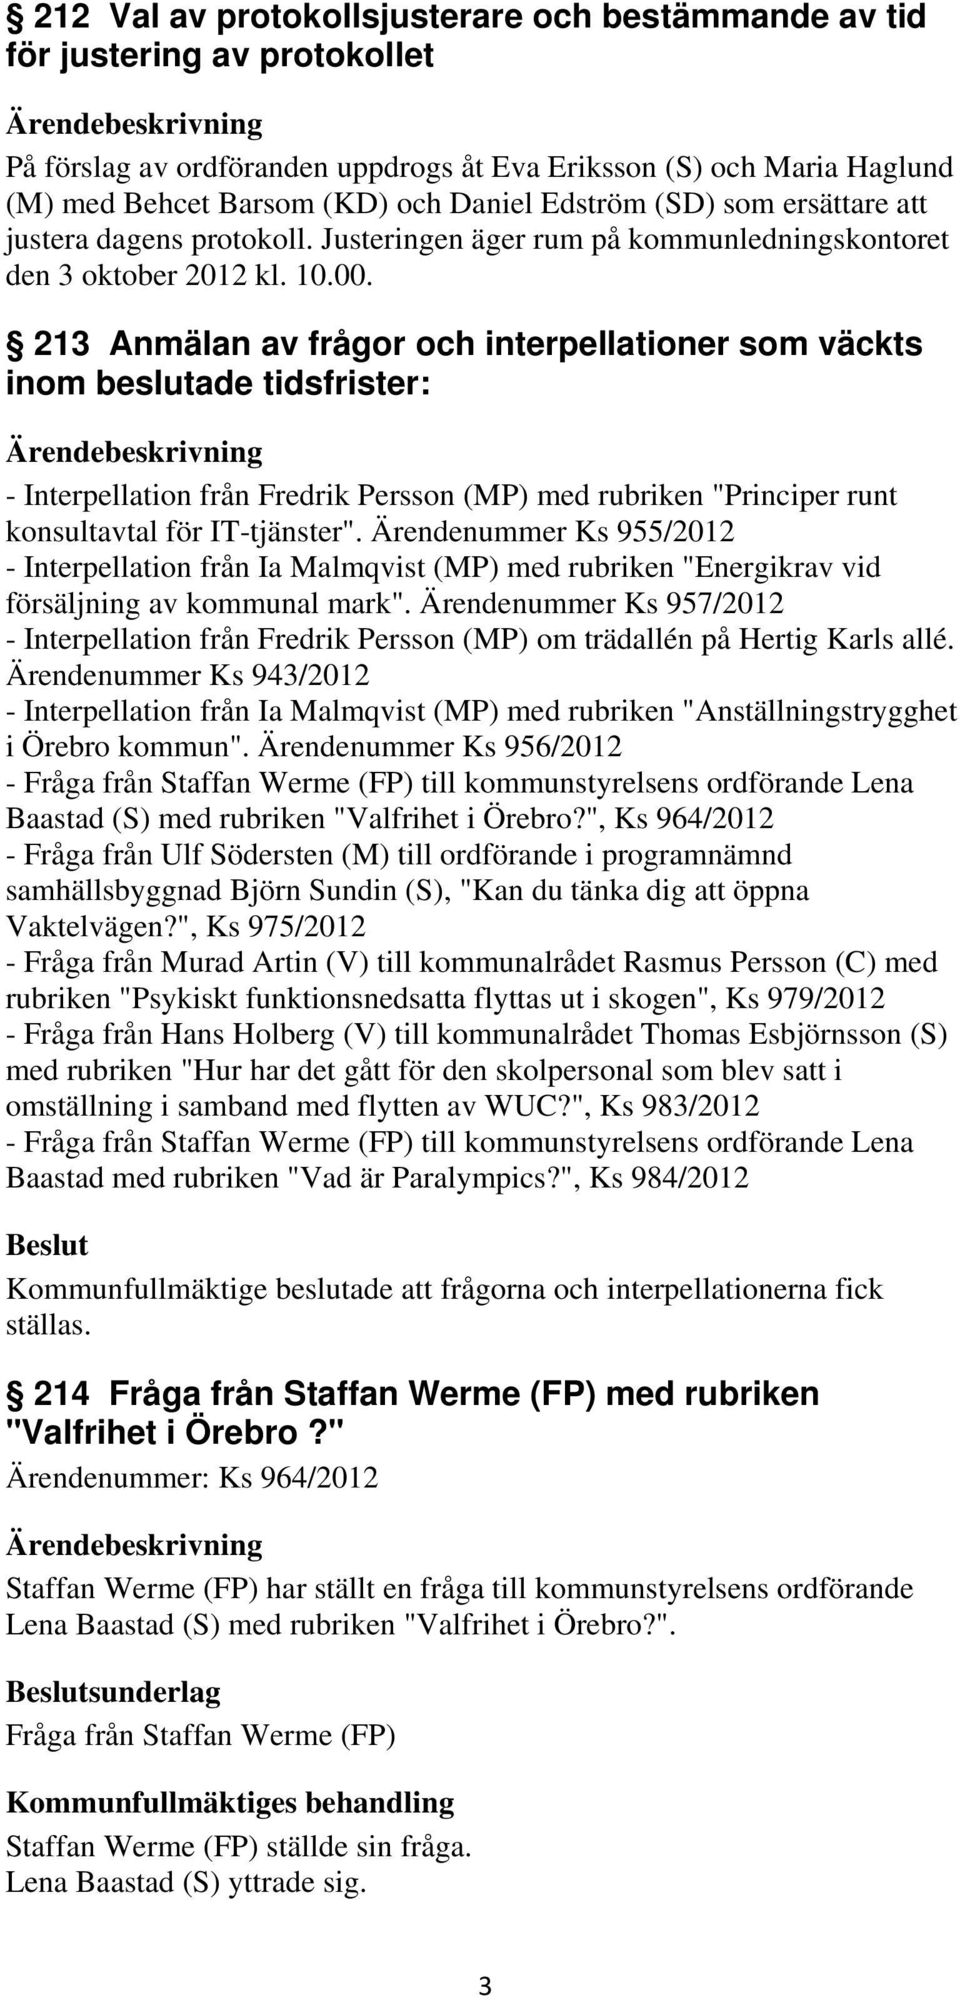 213 Anmälan av frågor och interpellationer som väckts inom beslutade tidsfrister: - Interpellation från Fredrik Persson (MP) med rubriken "Principer runt konsultavtal för IT-tjänster".